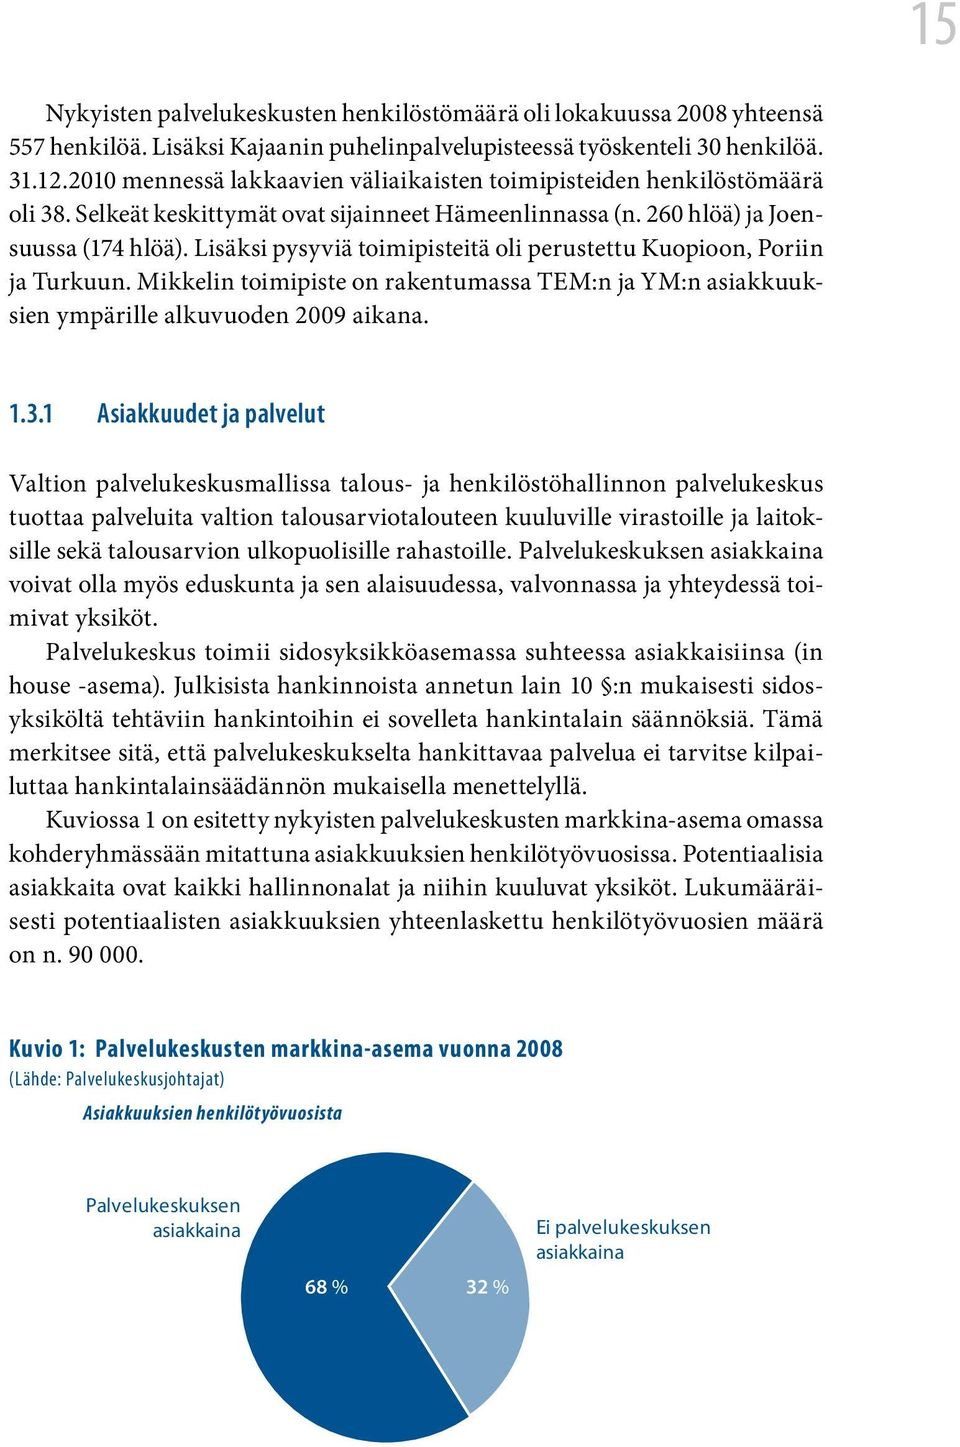 Lisäksi pysyviä toimipisteitä oli perustettu Kuopioon, Poriin ja Turkuun. Mikkelin toimipiste on rakentumassa TEM:n ja YM:n asiakkuuksien ympärille alkuvuoden 2009 aikana. 1.3.